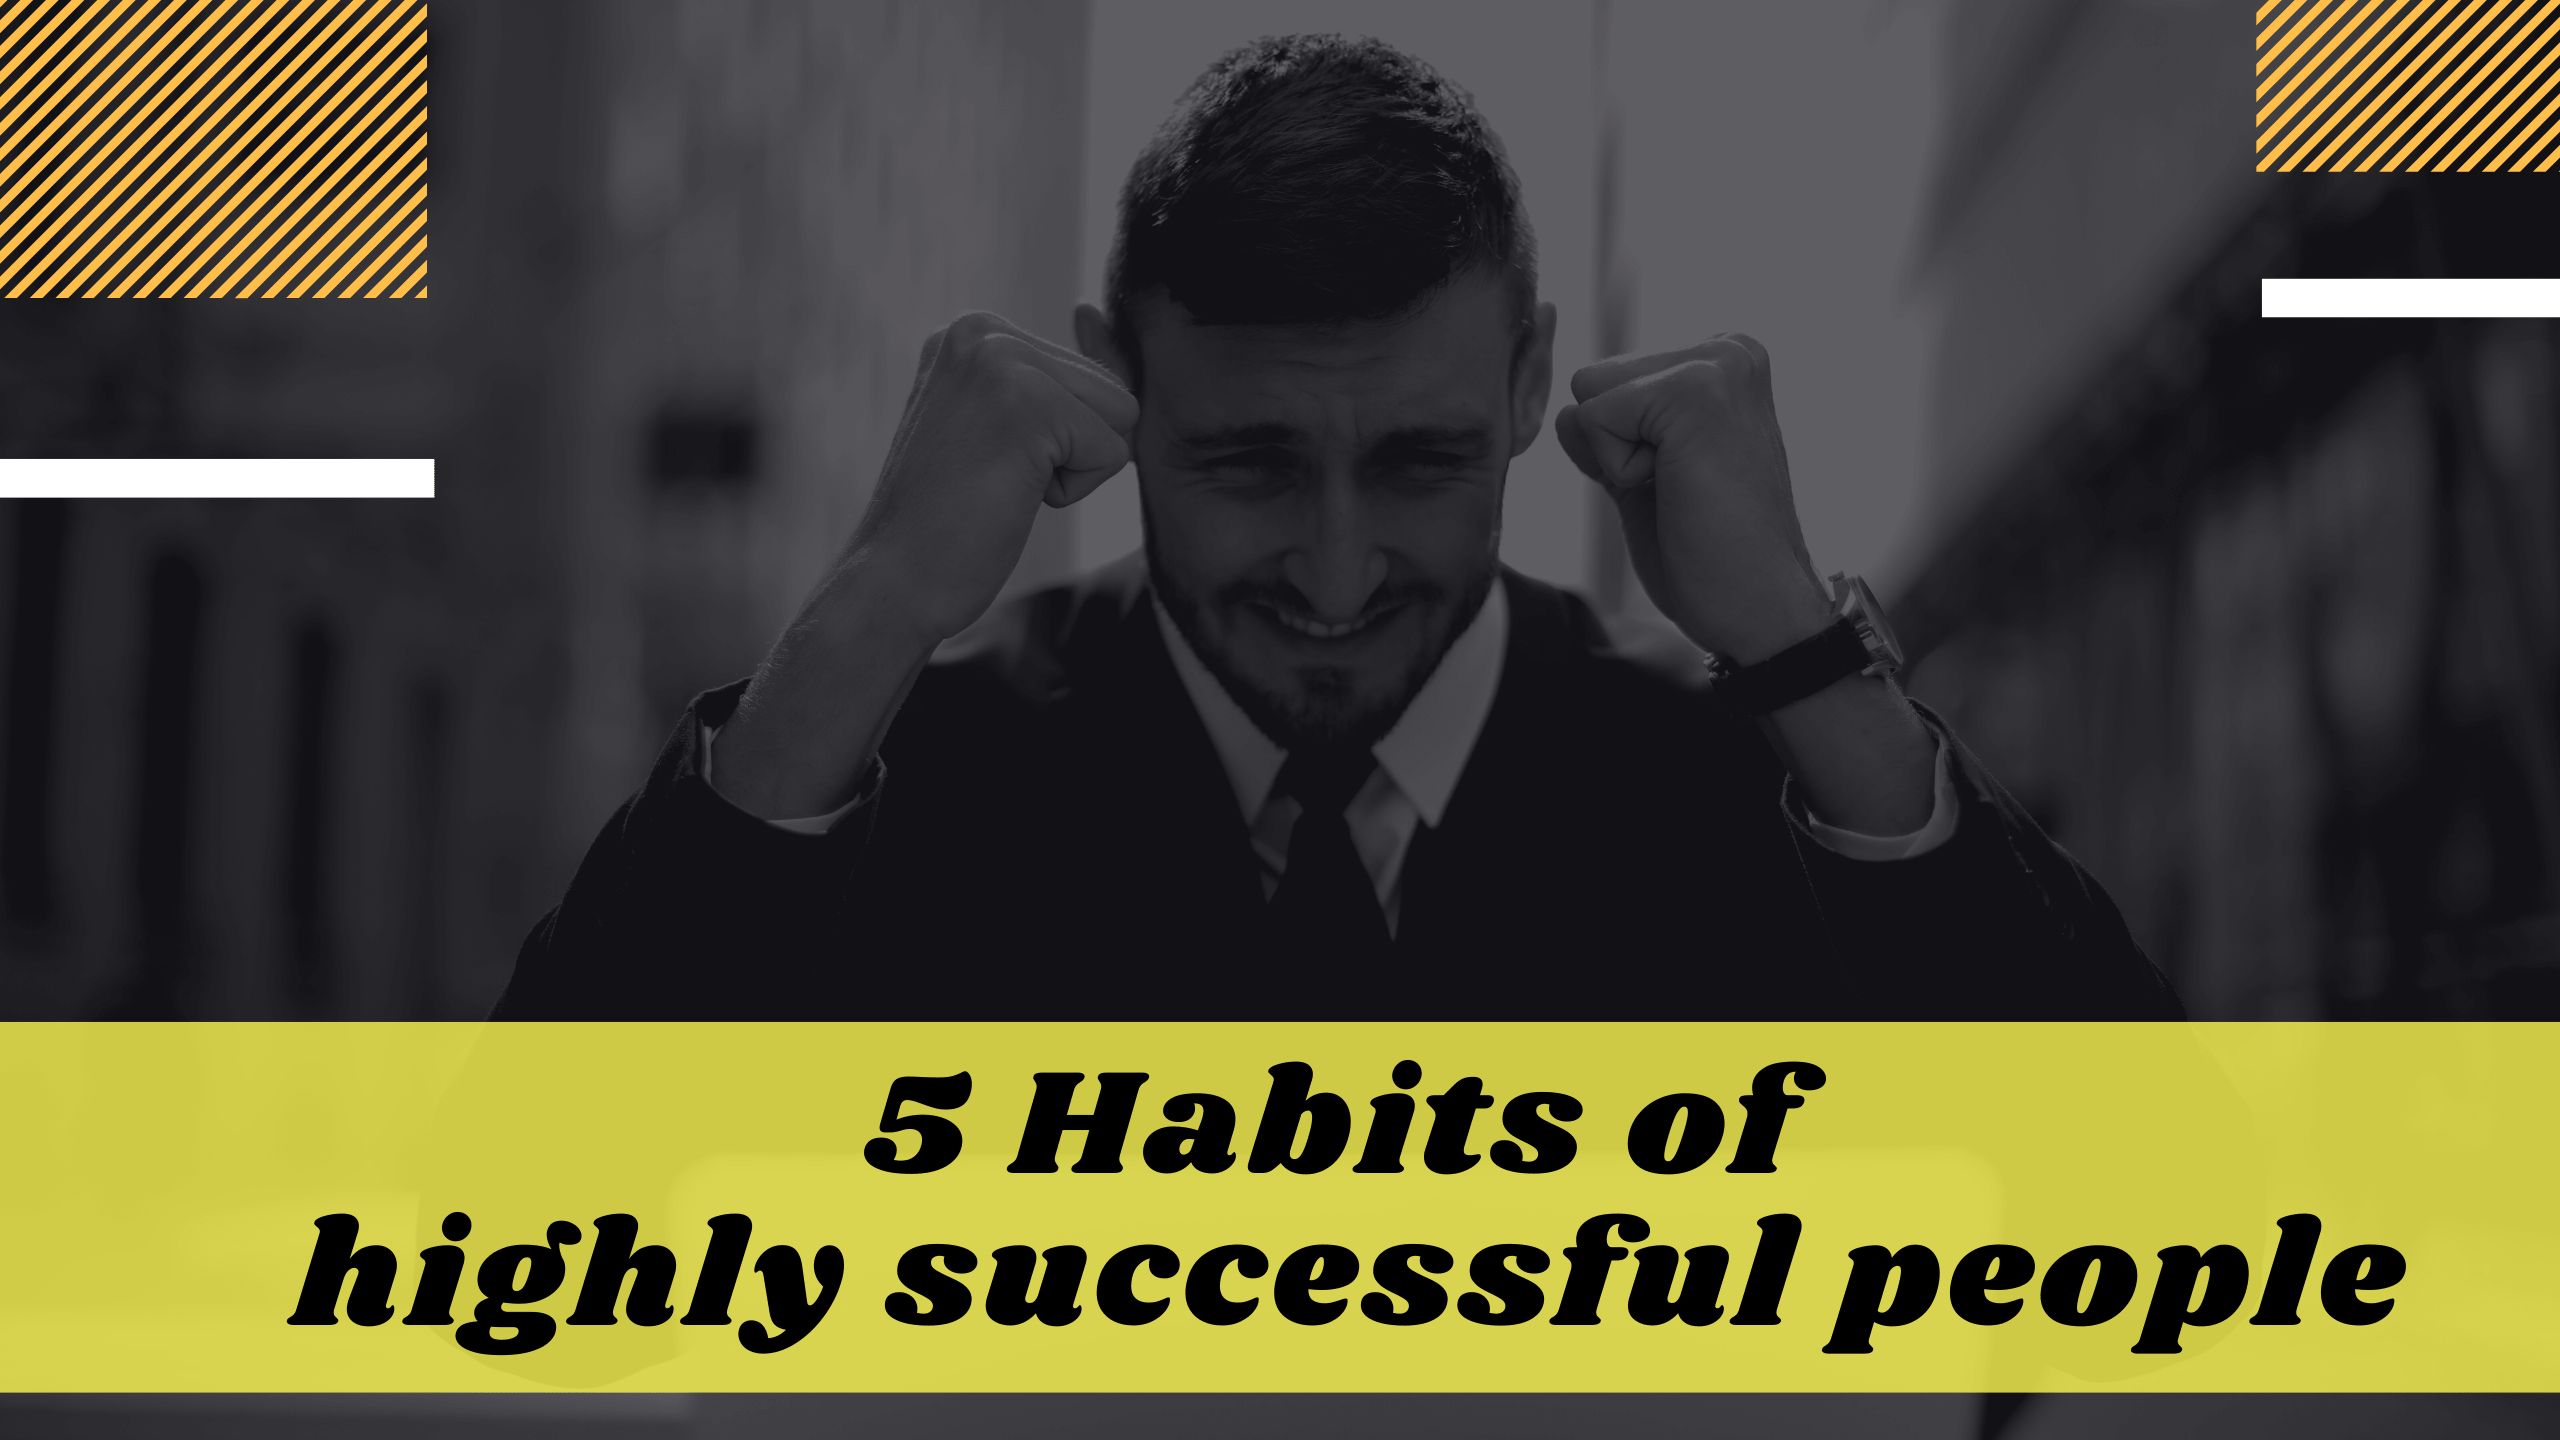 अगर जिंदगी में सफल बनना चाहते हो तो आपमें होने चाहिए यह महत्वपूर्ण 5 आदते।